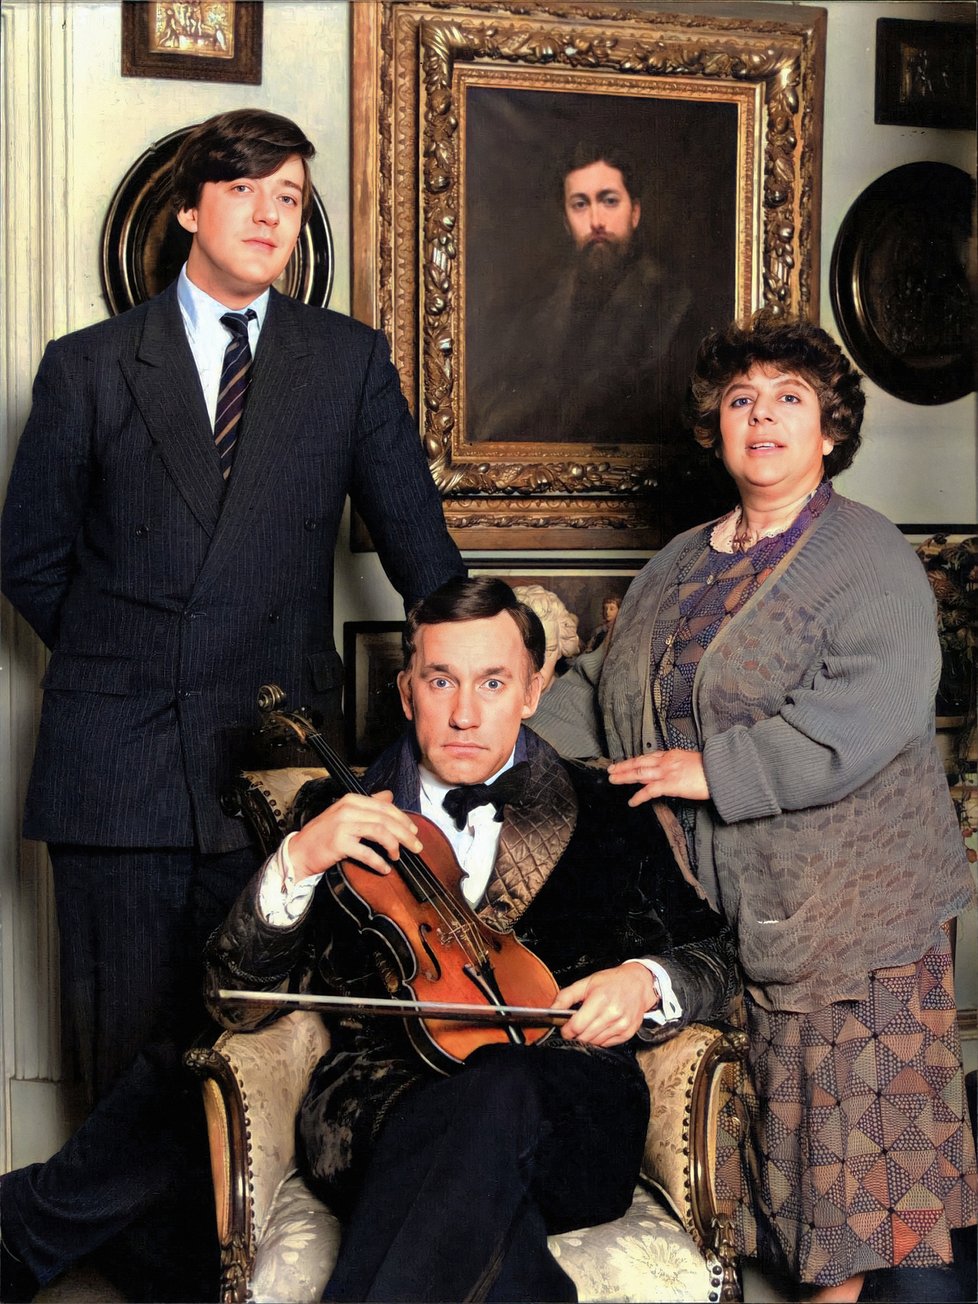 Snímek z Old Flames, britského televizního seriálu z roku 1990, jehož autorem je Stephen Fry a v němž hrají Simon Callow a Miriam Margolyes. Skládal se ze čtyř epizod, z nichž každá se zaměřovala na jiný milostný vztah v životě tří hlavních postav.